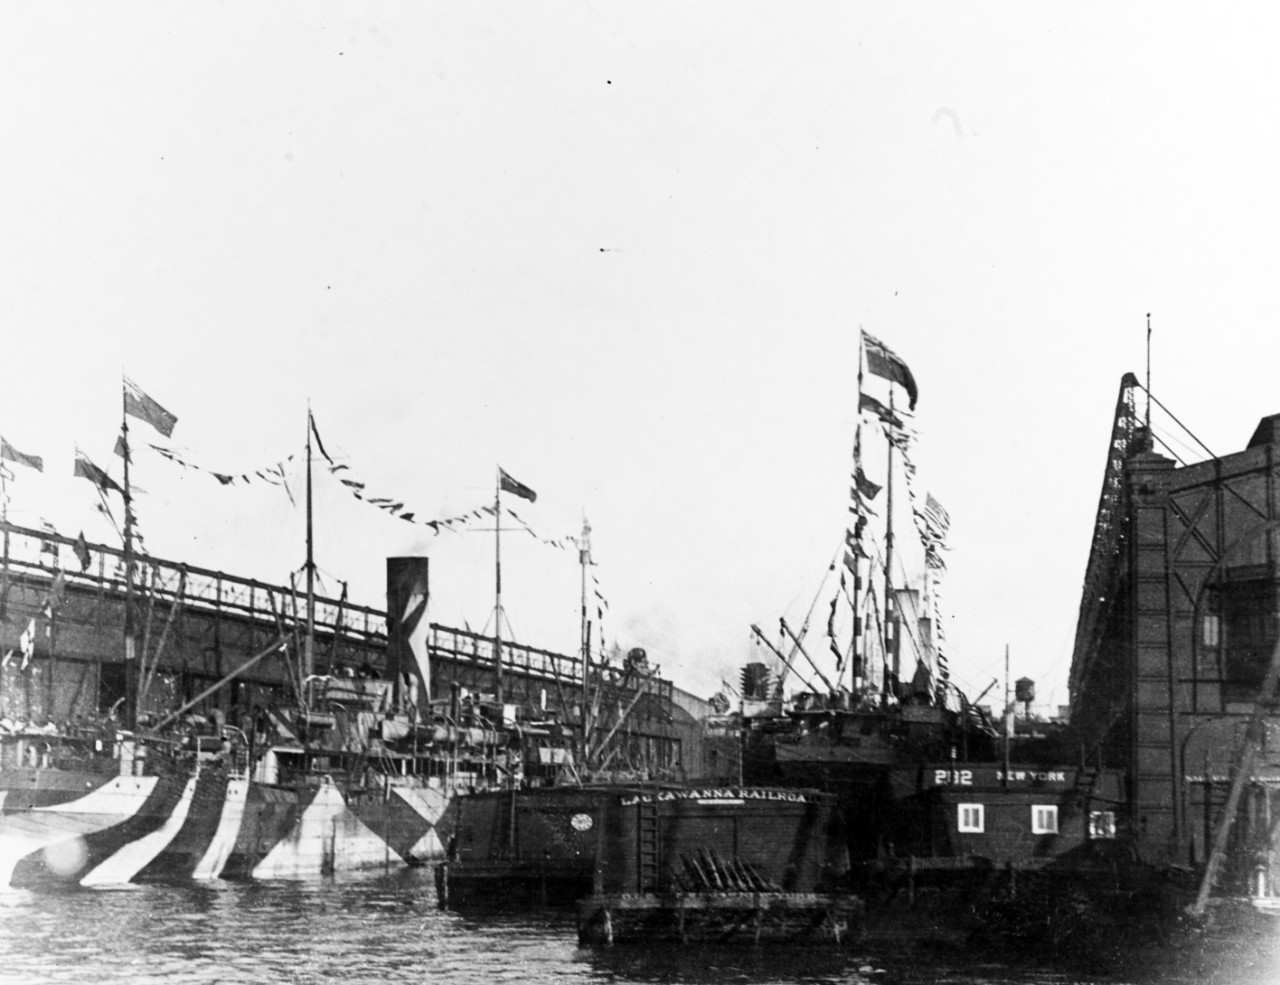 Merchant ships at New York City, 1918.